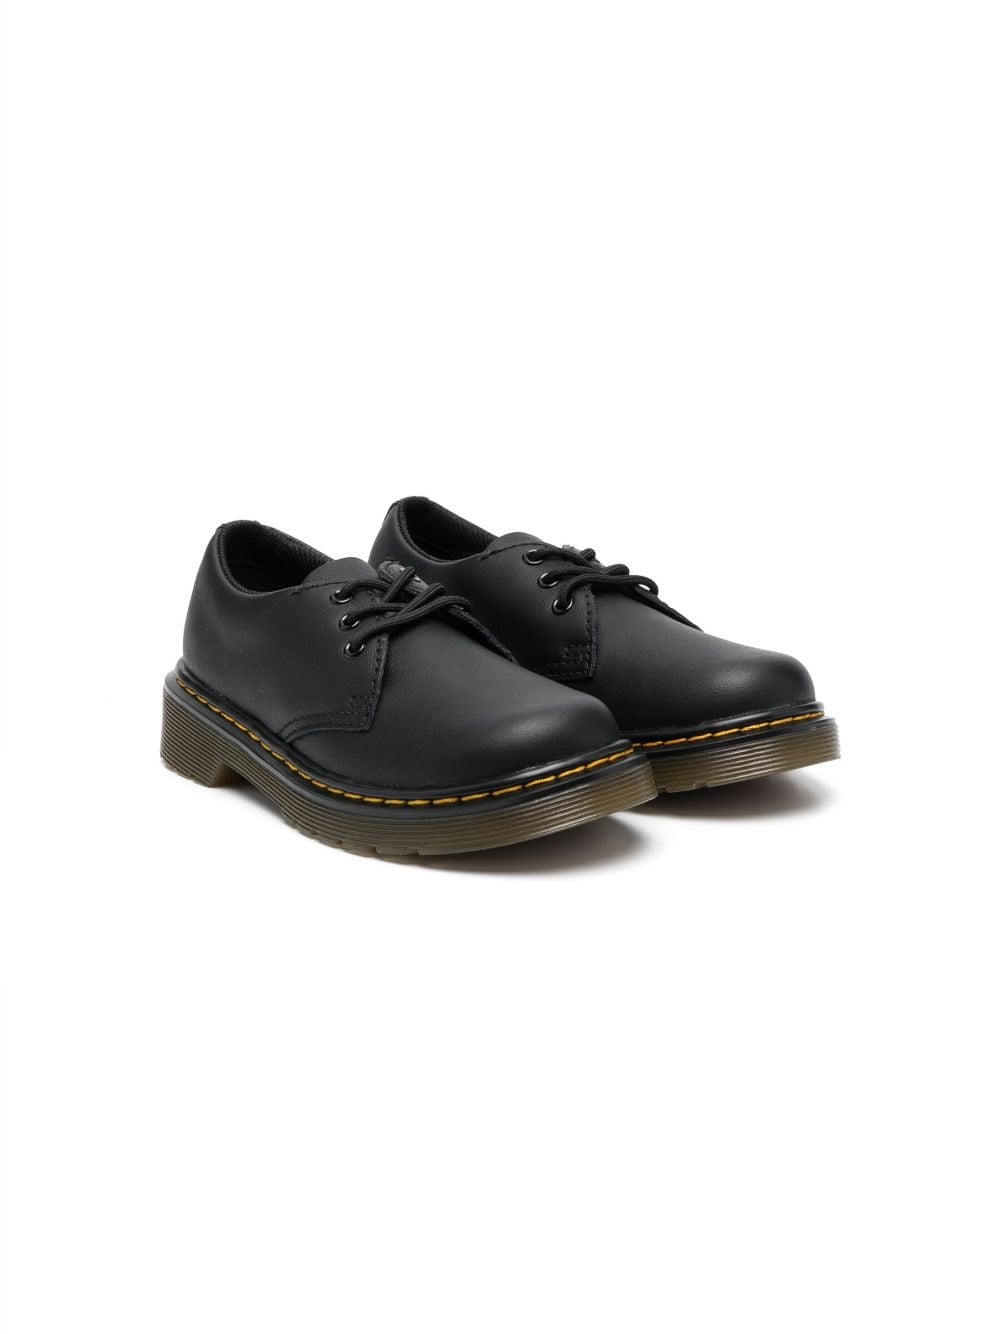 Dr. Martens Kids 1461 leather Derby shoes - Black